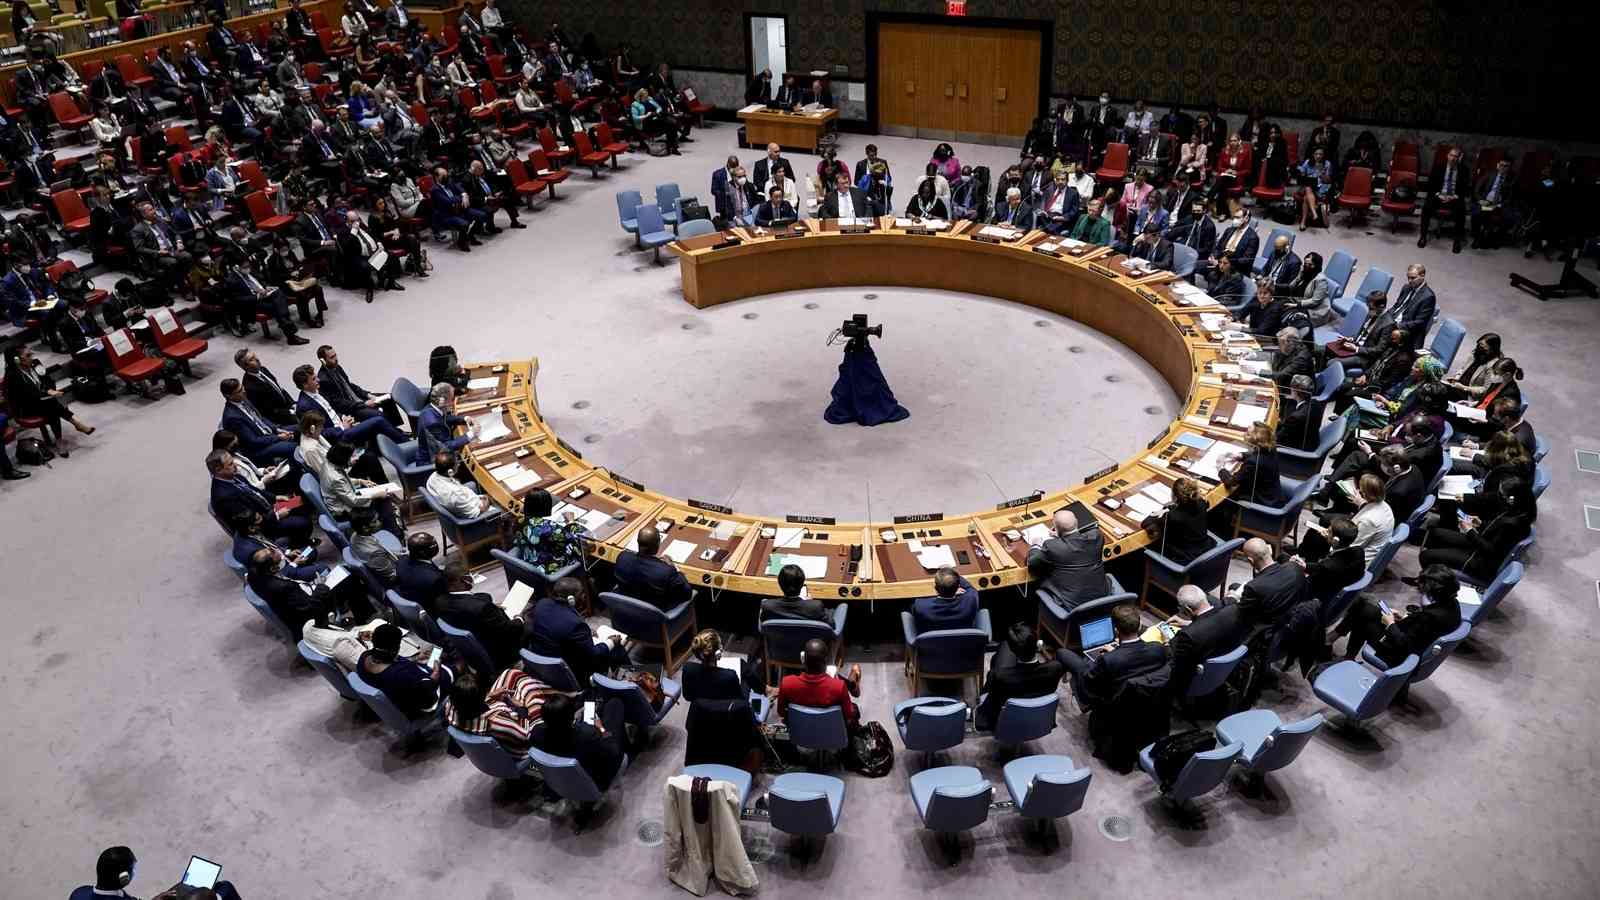 مجلس الأمن يحيل طلب عضوية فلسطين إلى اللجنة المعنية